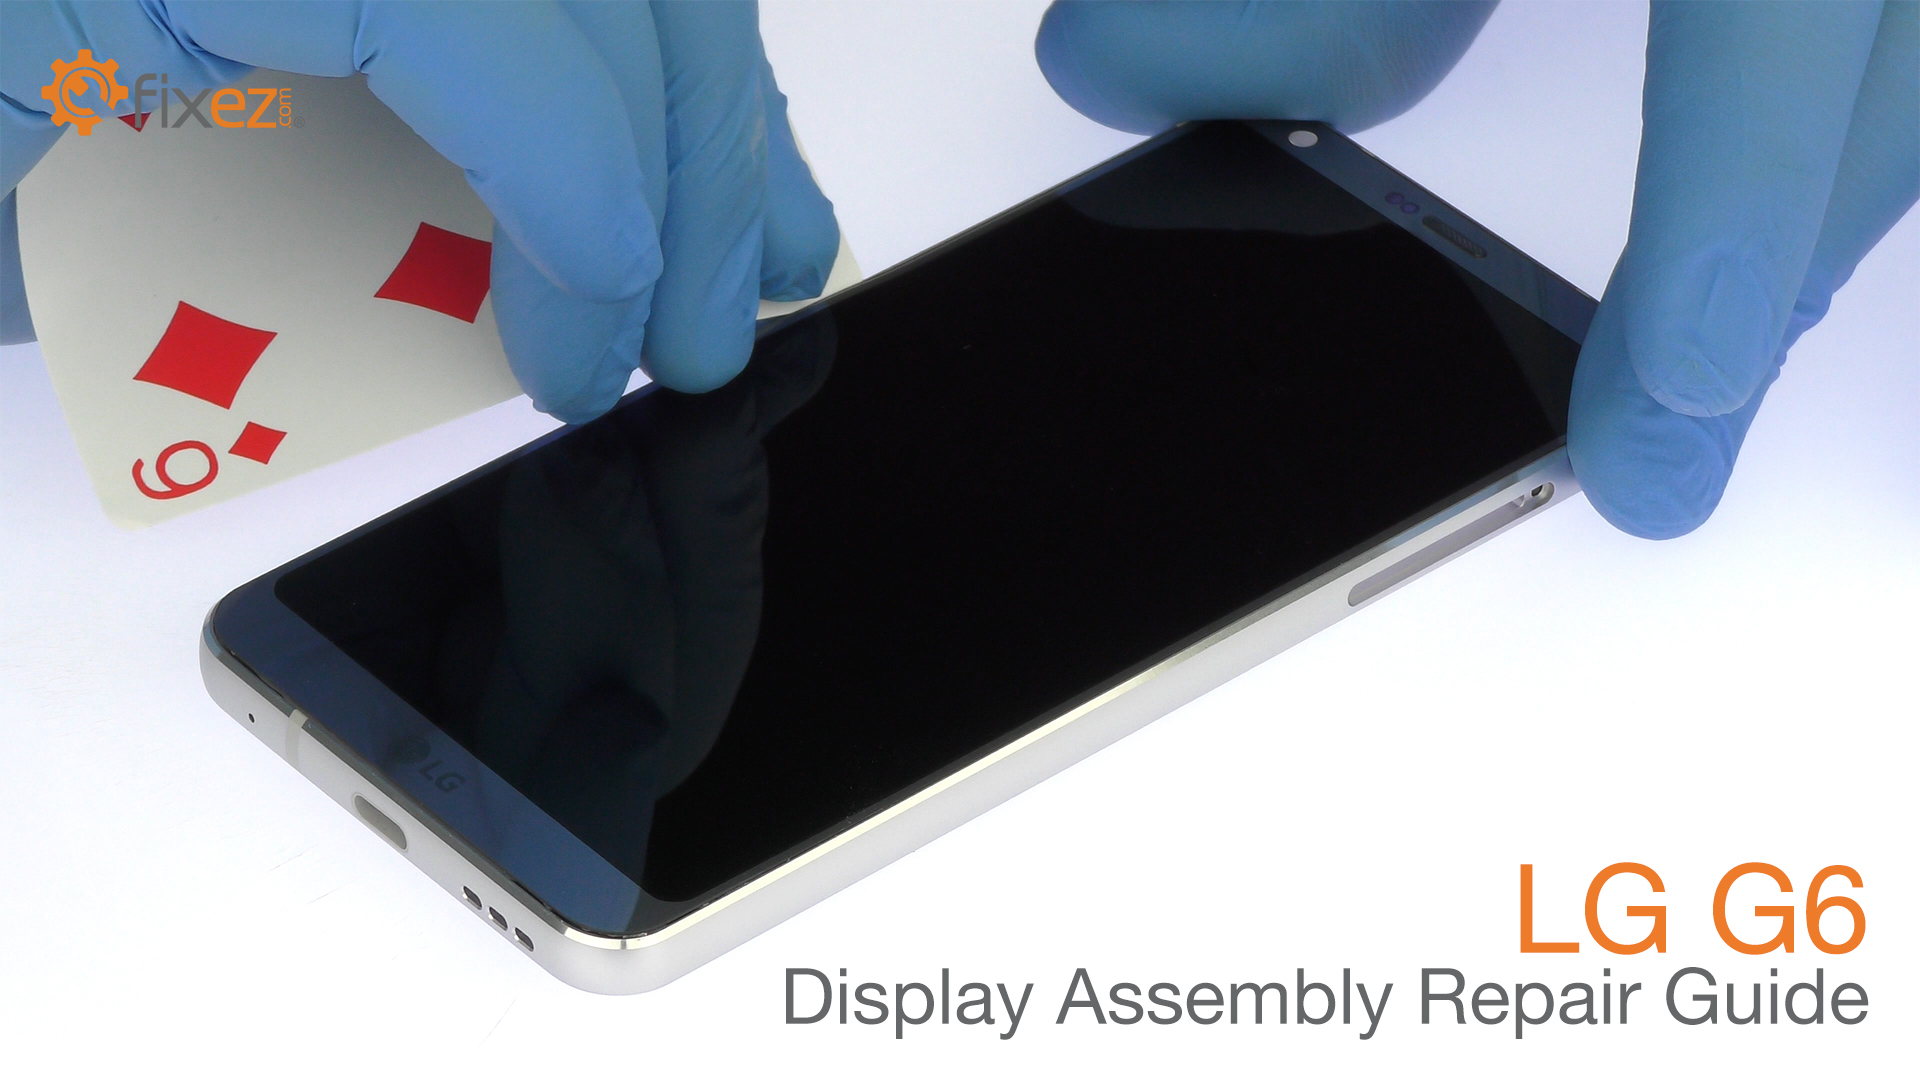 LG G6 Display Assembly Repair